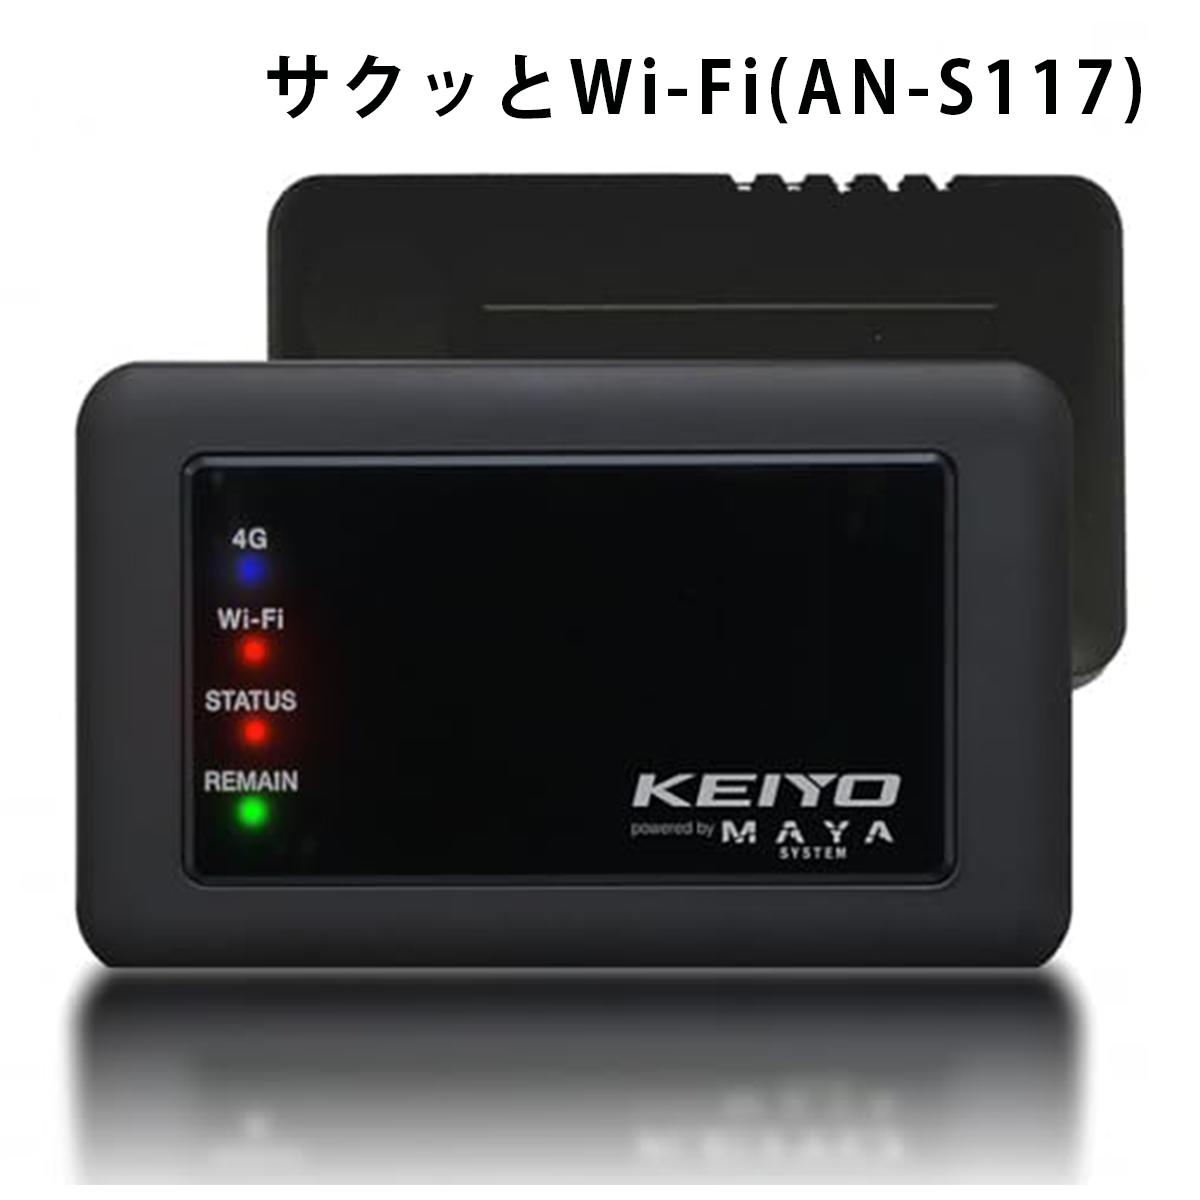 KEIYO サクッと使える車載対応Wi-Fiルー...の商品画像